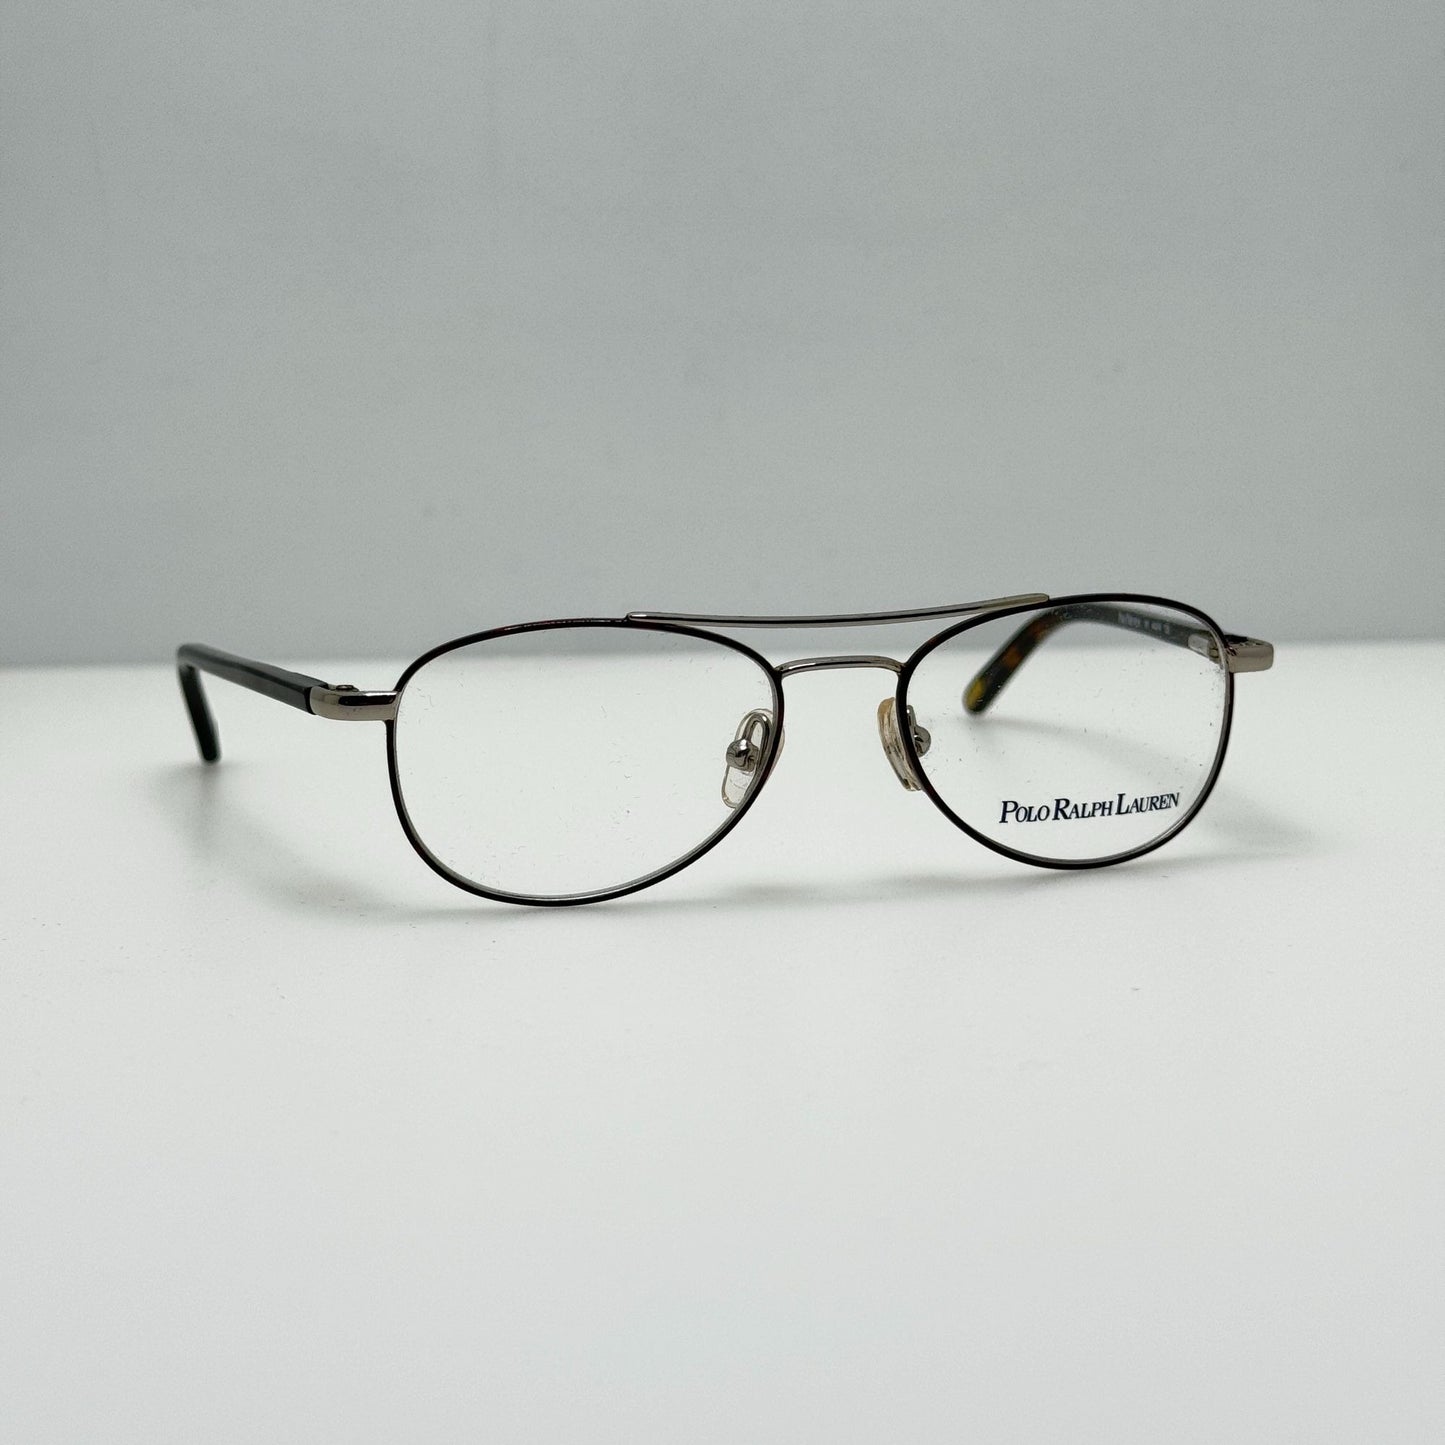 Polo Prep Ralph Lauren Eyeglasses Eye Glasses Frames 8014 191 Youth 44-14-125